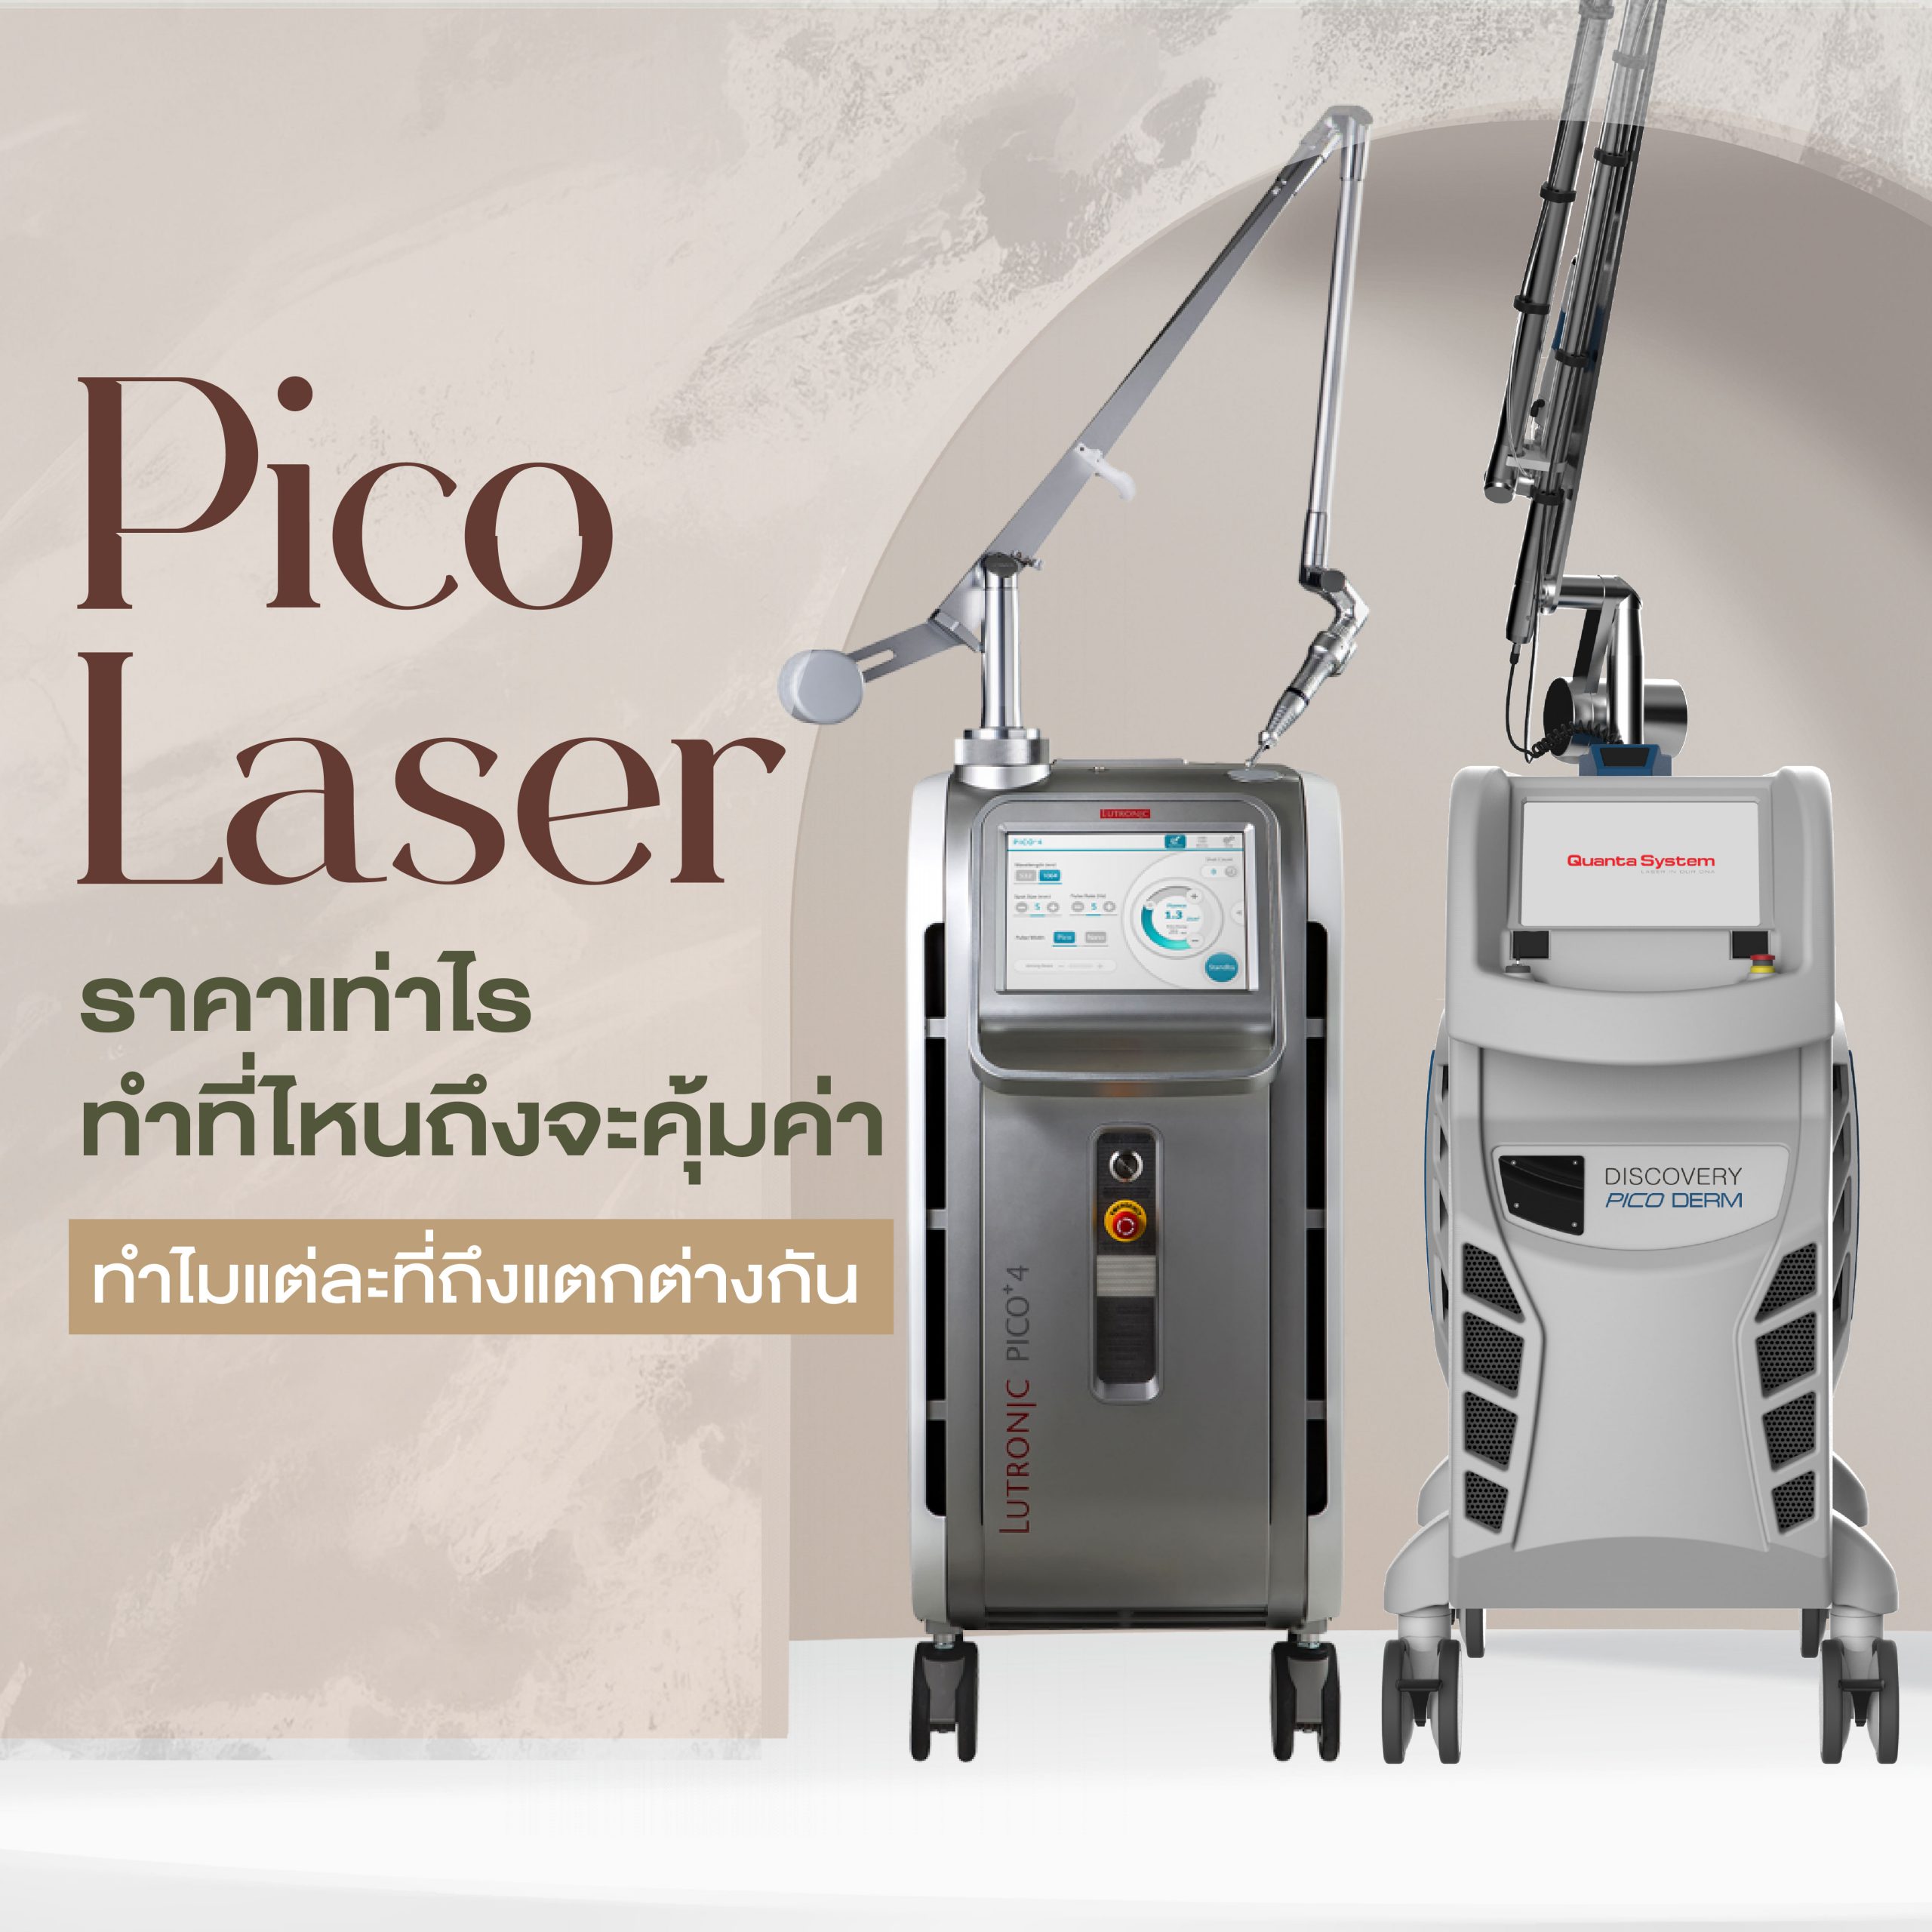 Pico Laser ราคาเท่าไร ทำที่ไหนคุ้มเงินสุด แต่ละที่ต่างกันอย่างไร ทำไมราคาต่างกัน